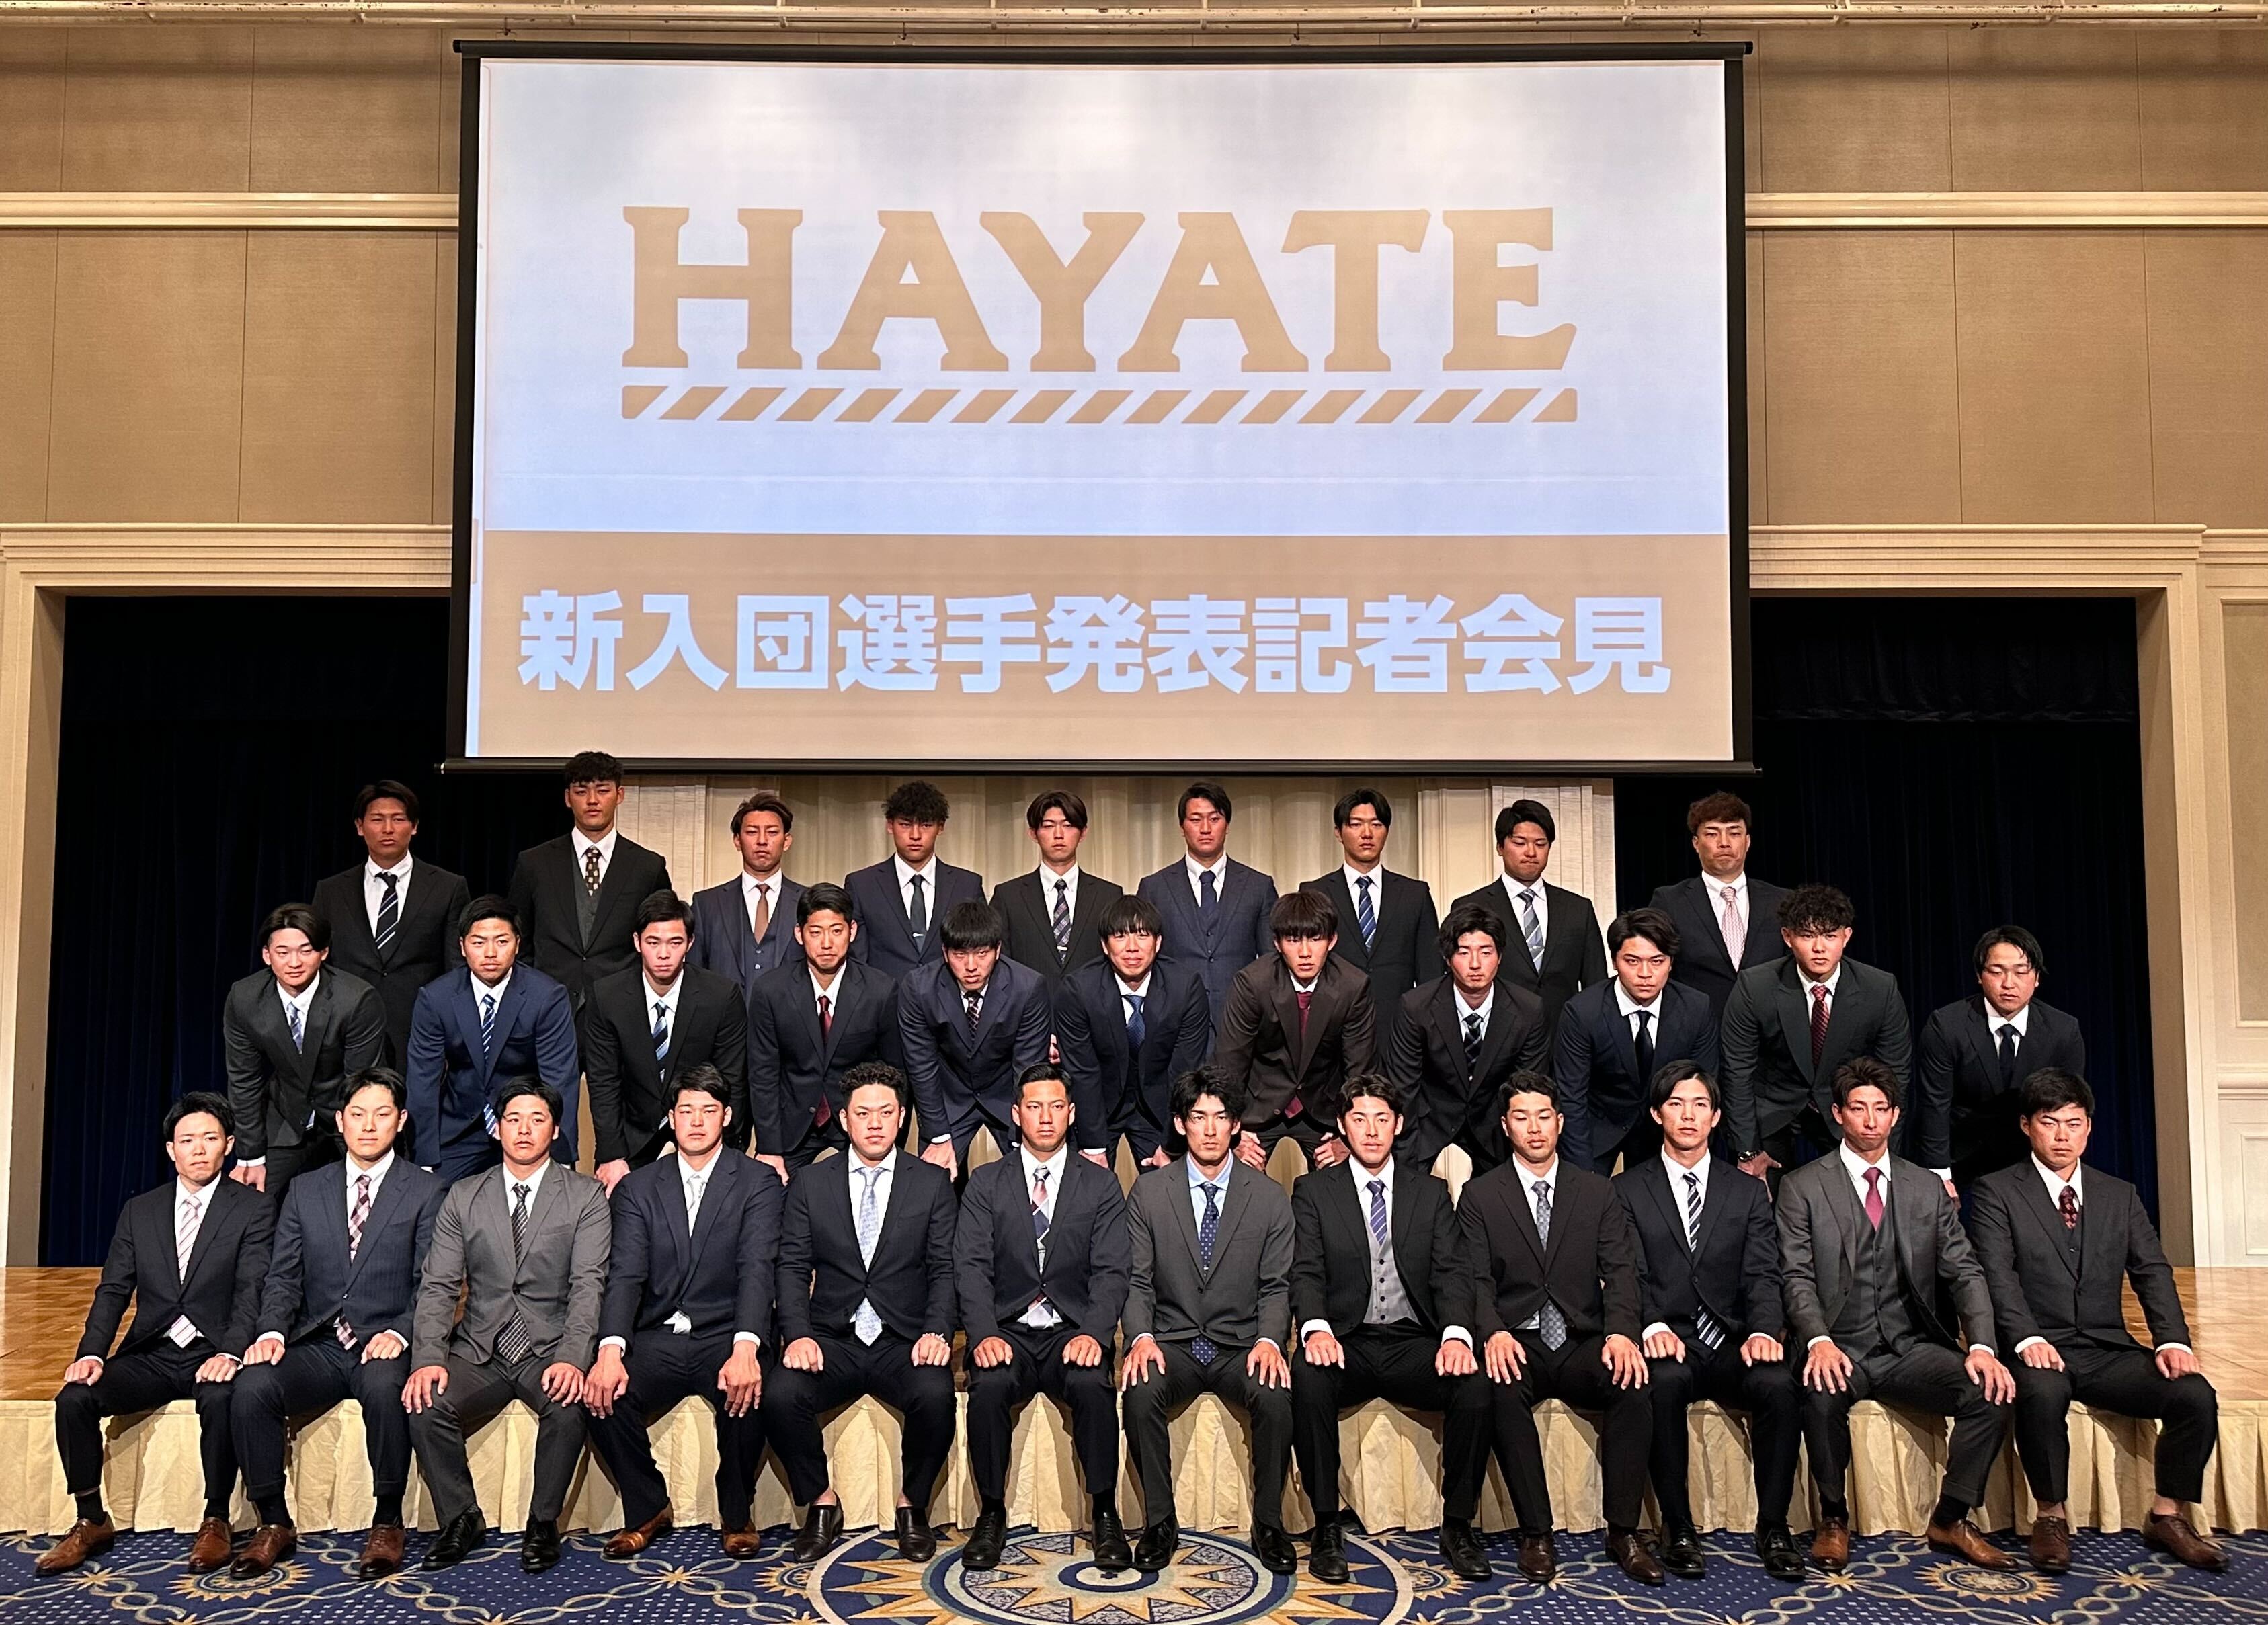 ハヤテ223株式会社 選手発表